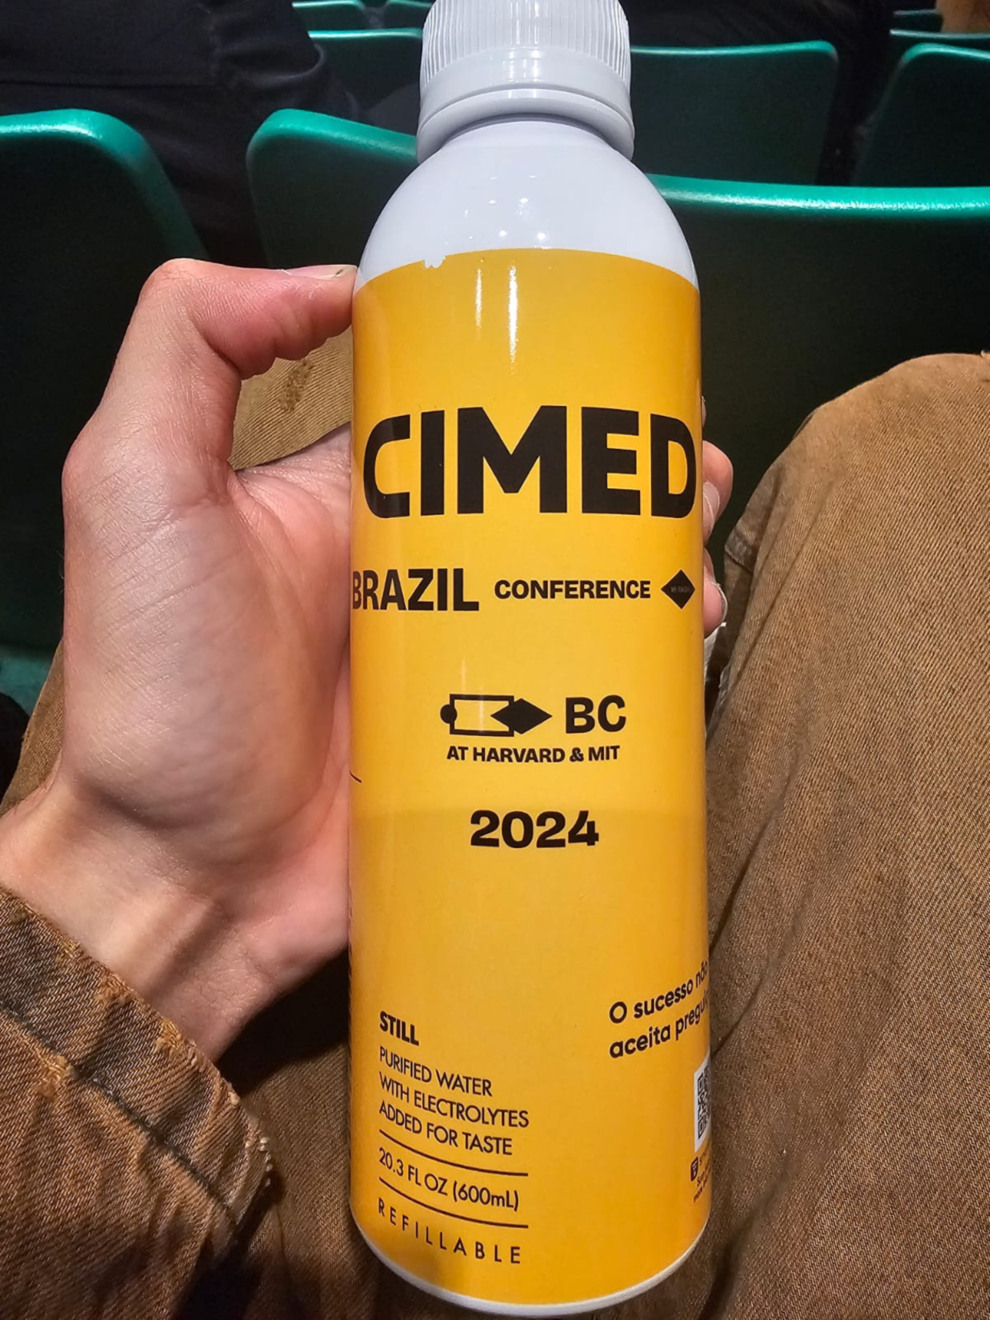 A Cimed expandiu sua estratégia de marketing até Harvard, realizando uma ativação presencial durante a Brazil Conference, onde distribuiu duas mil garrafas personalizadas de cor amarela. Essas garrafas foram vistas sendo utilizadas pelos brasileiros em vários locais da conferência.